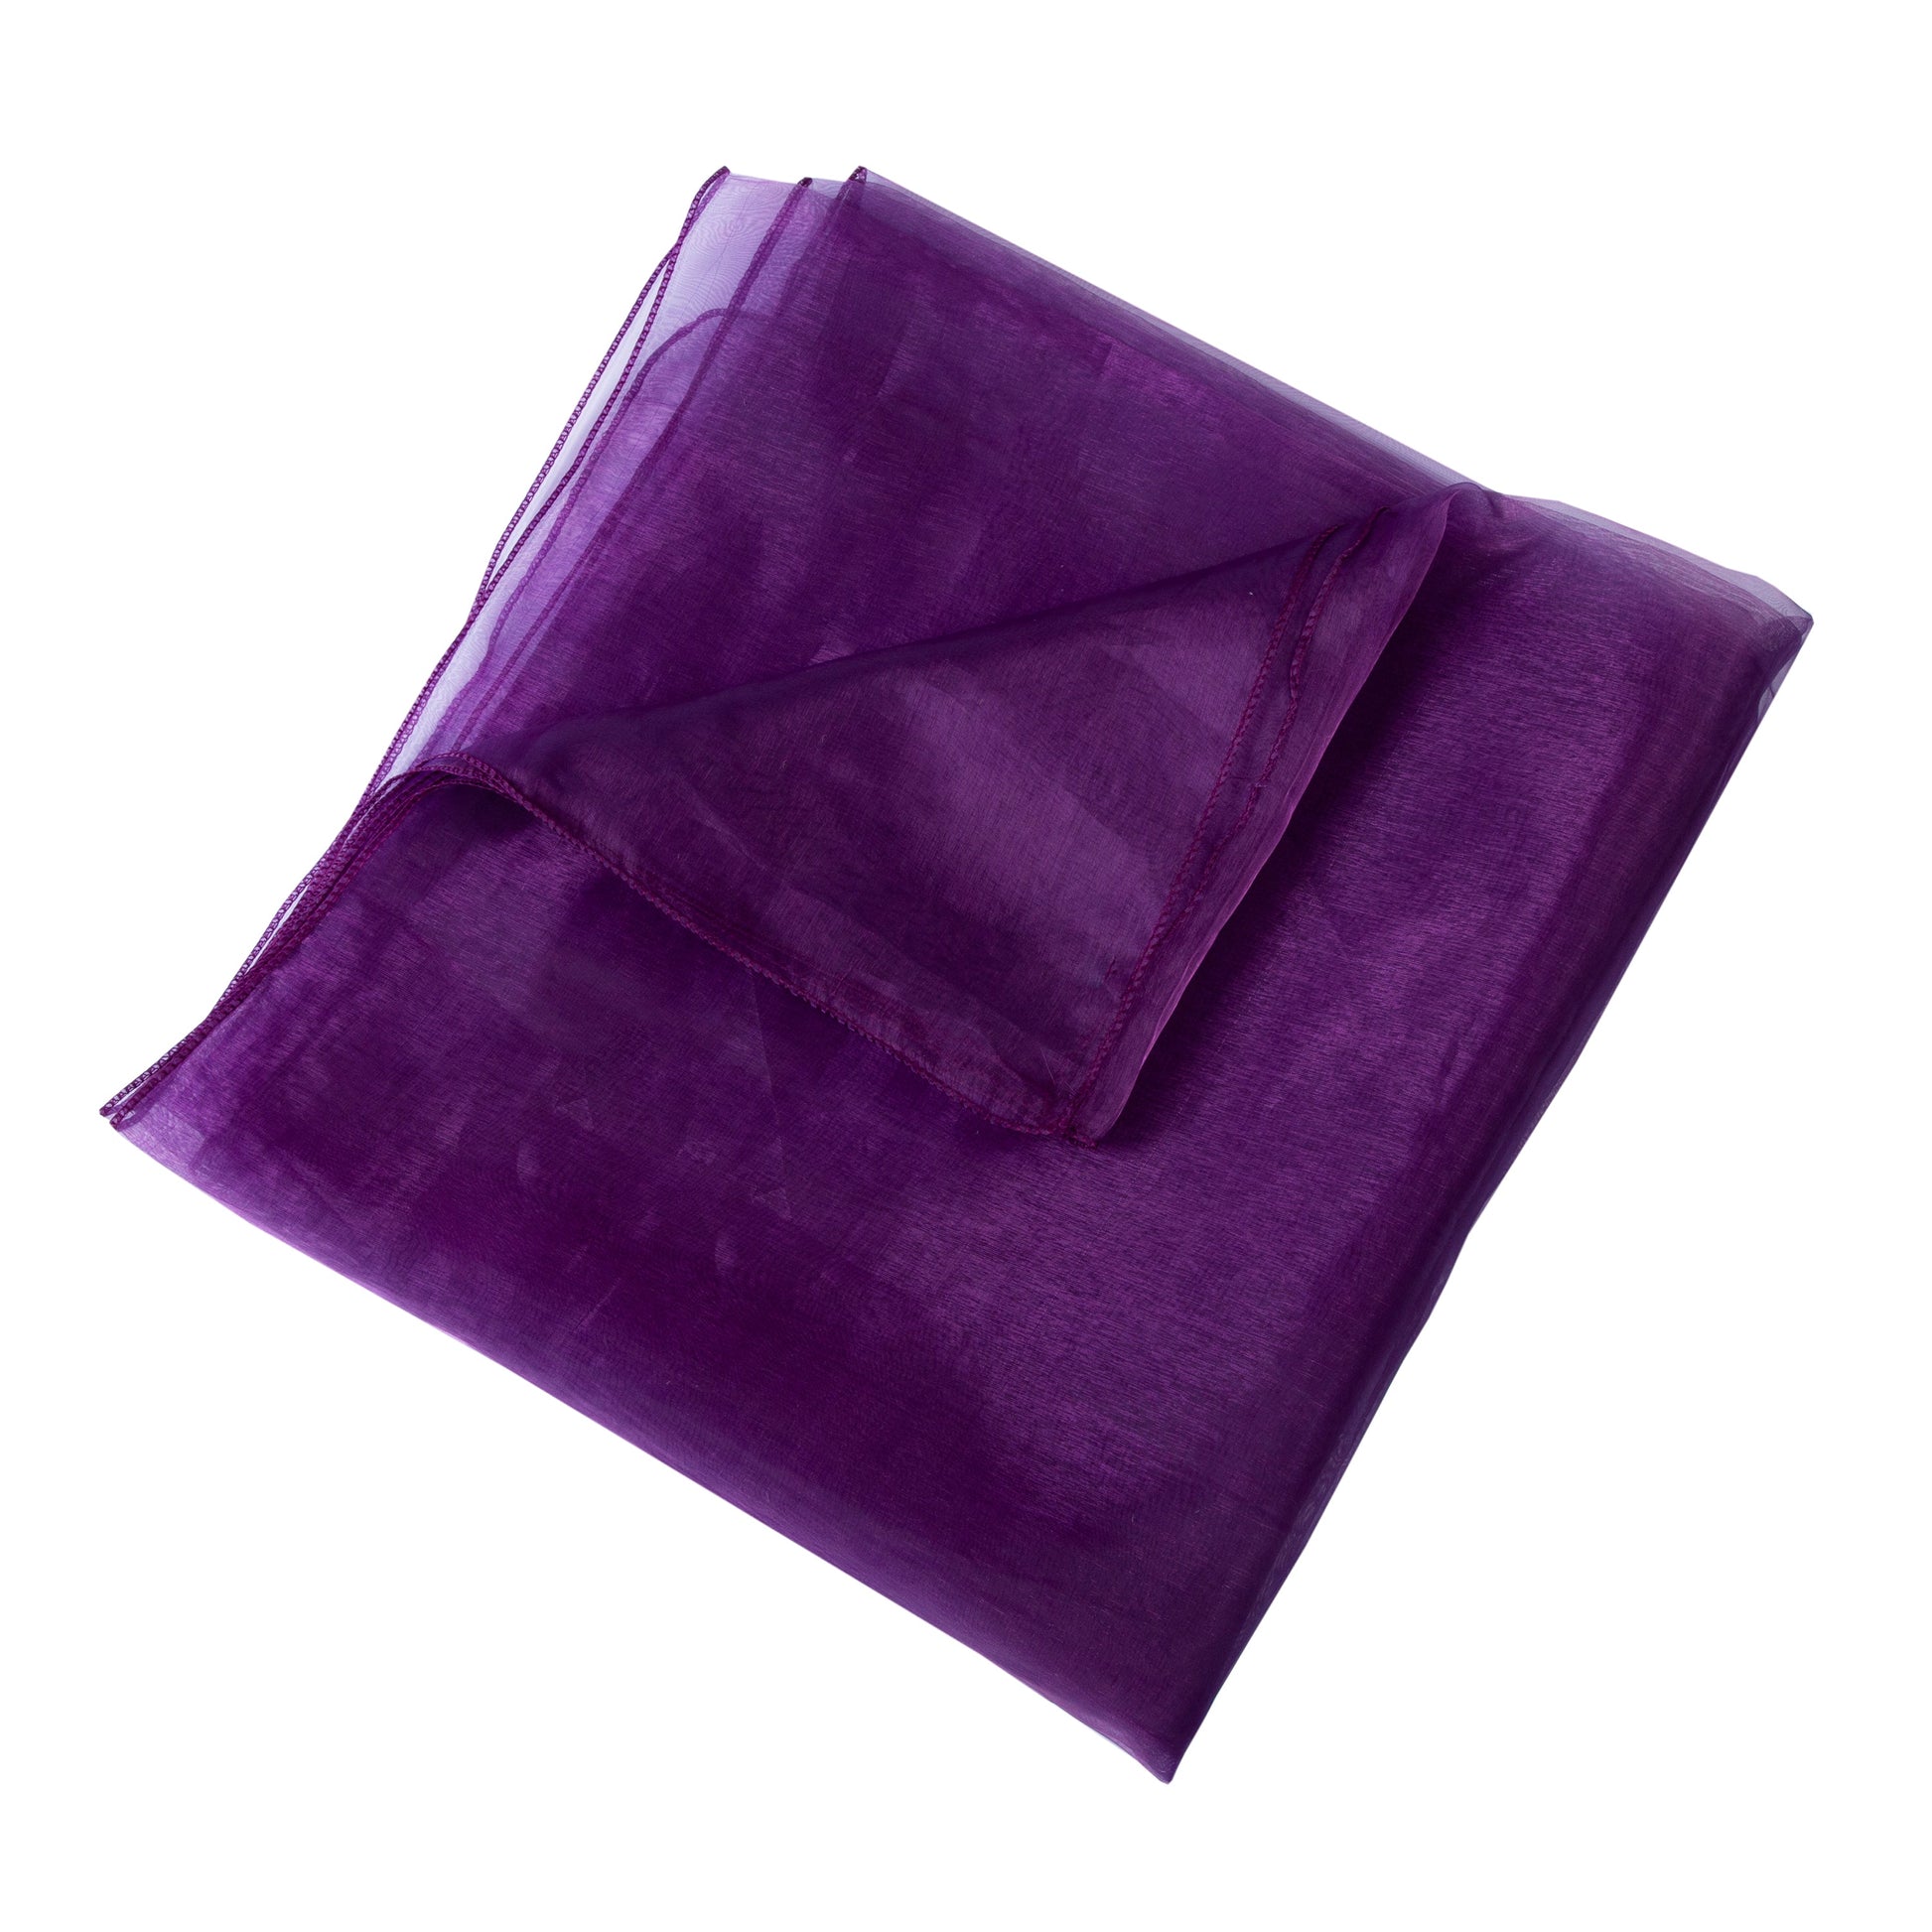 Dark Purple,82b4d6c5-726b-4900-94bc-ece5e1d5b6cc